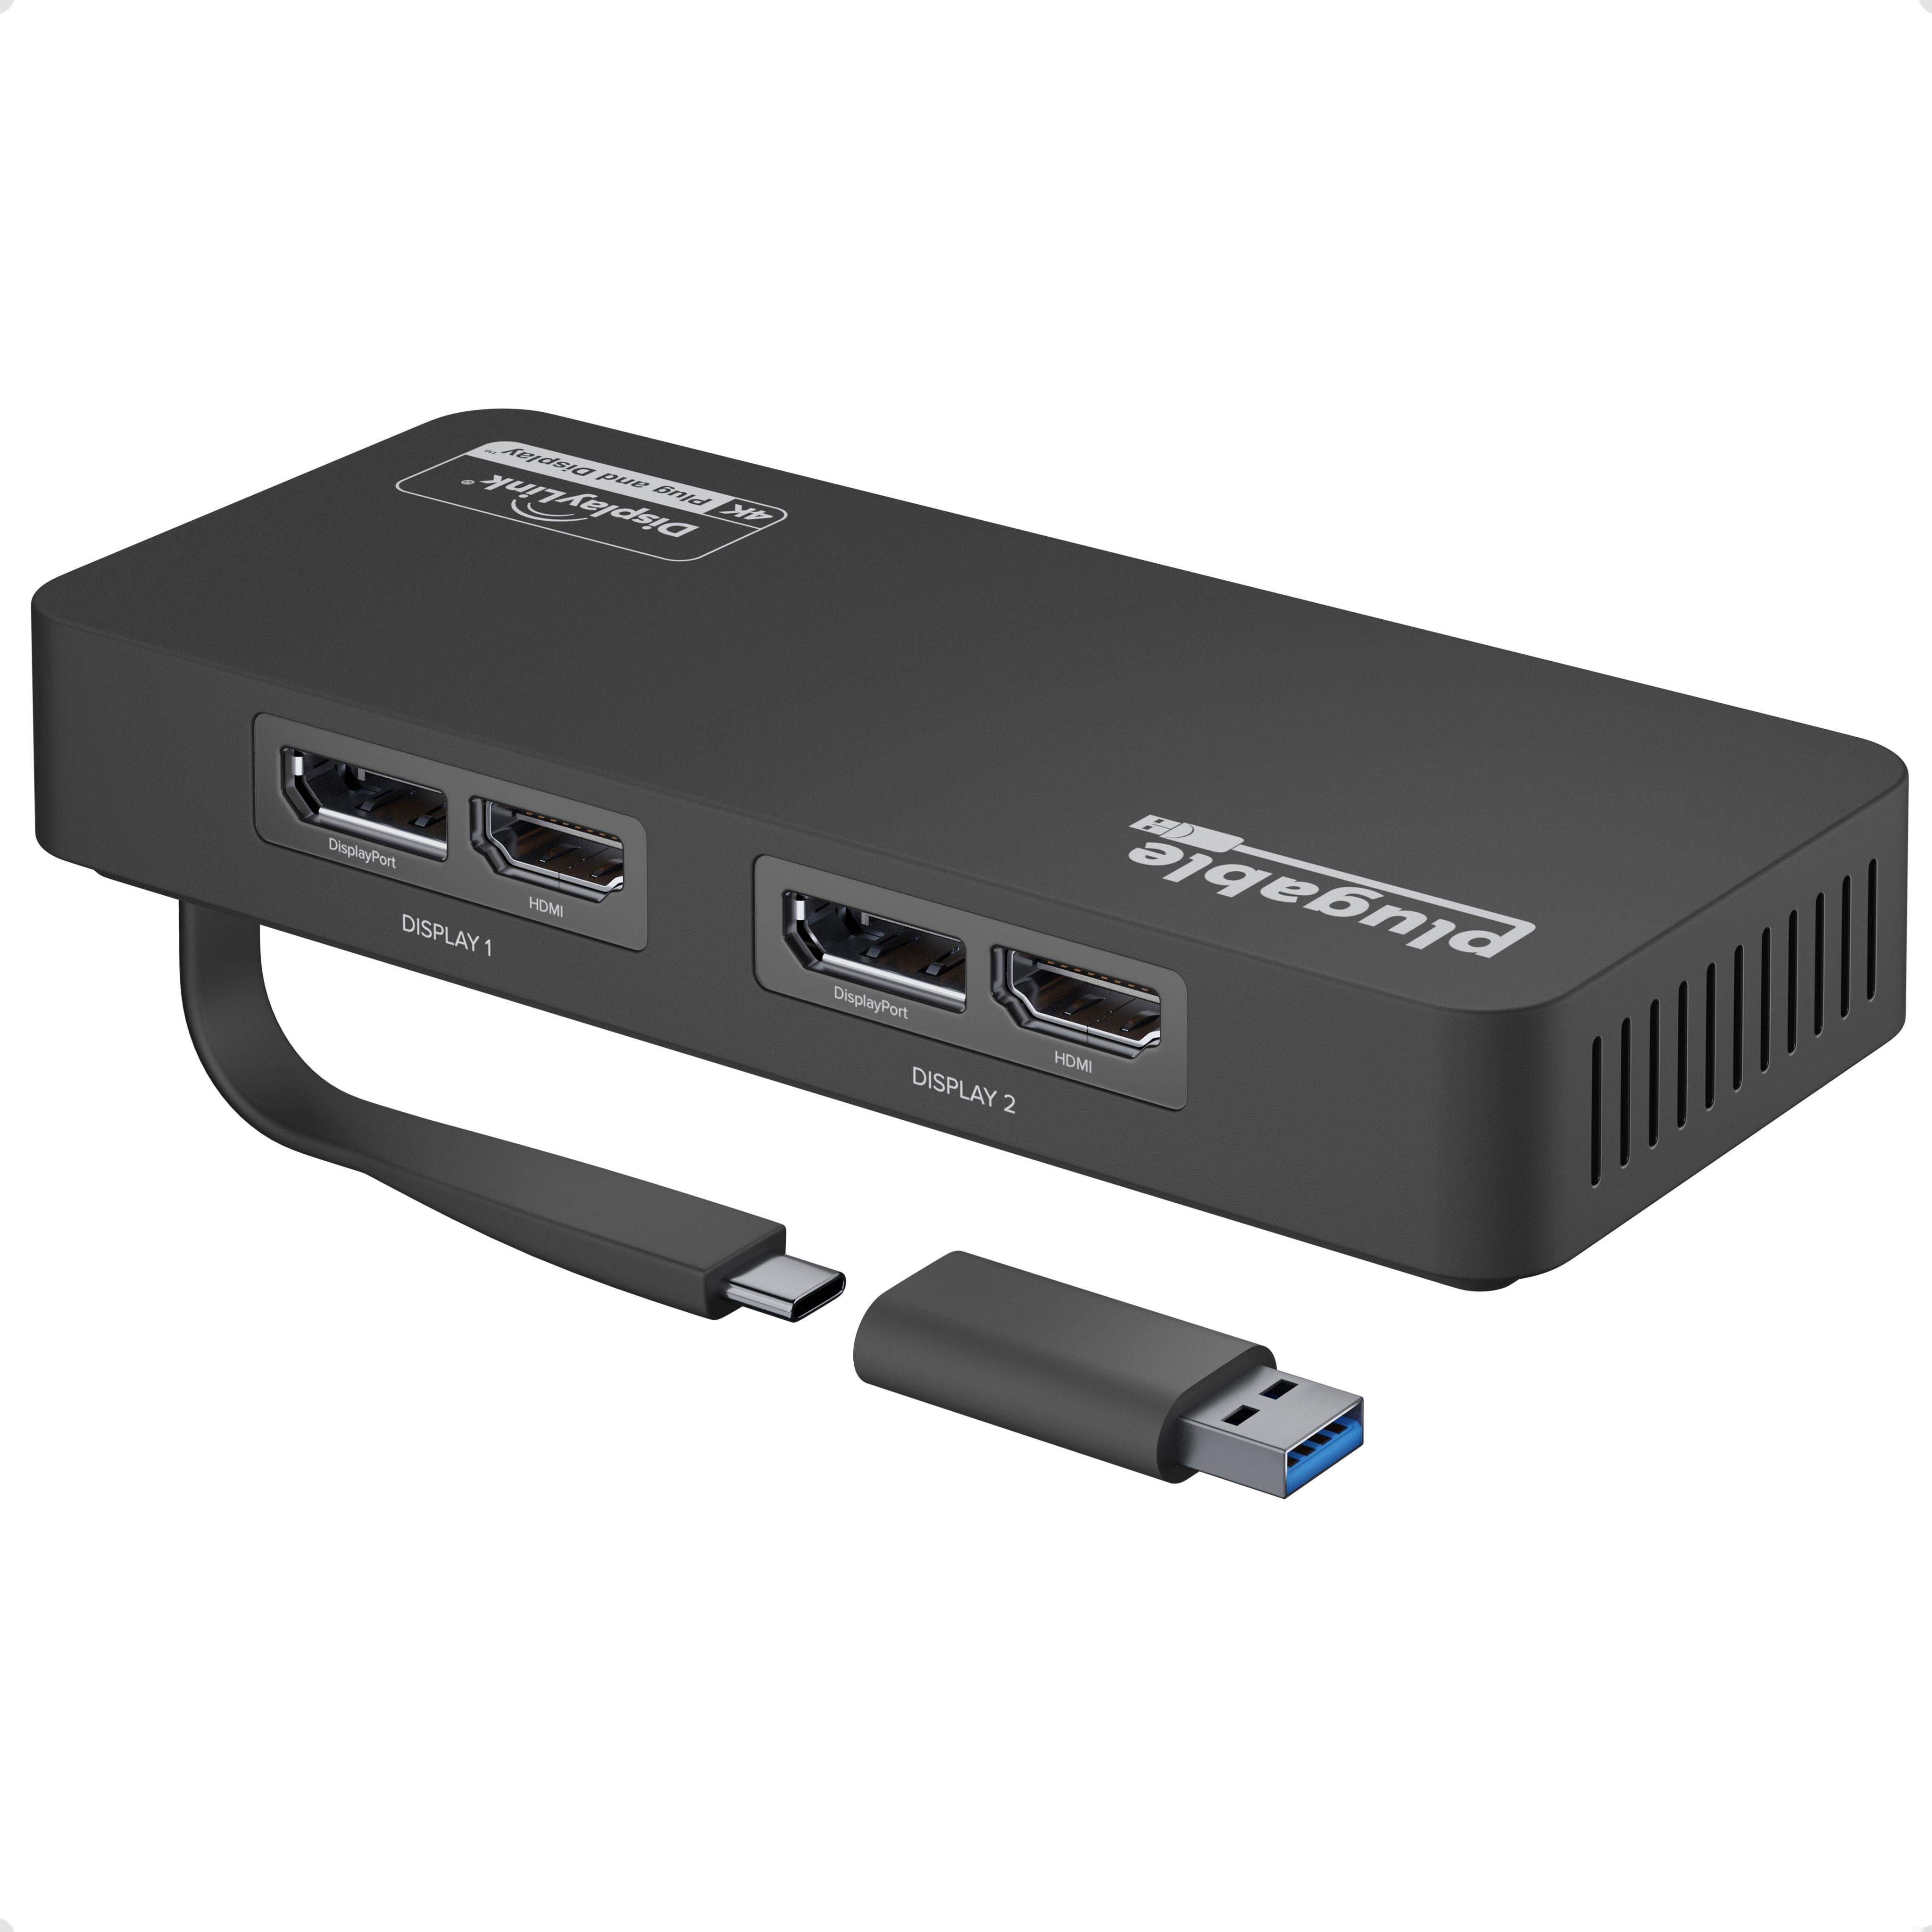 Adaptador USB a HDMI para monitor Windows 11/10/8, convertidor HDMI USB 3.0  para laptop, adaptador de cable HDMI USB múltiples monitores para PC de